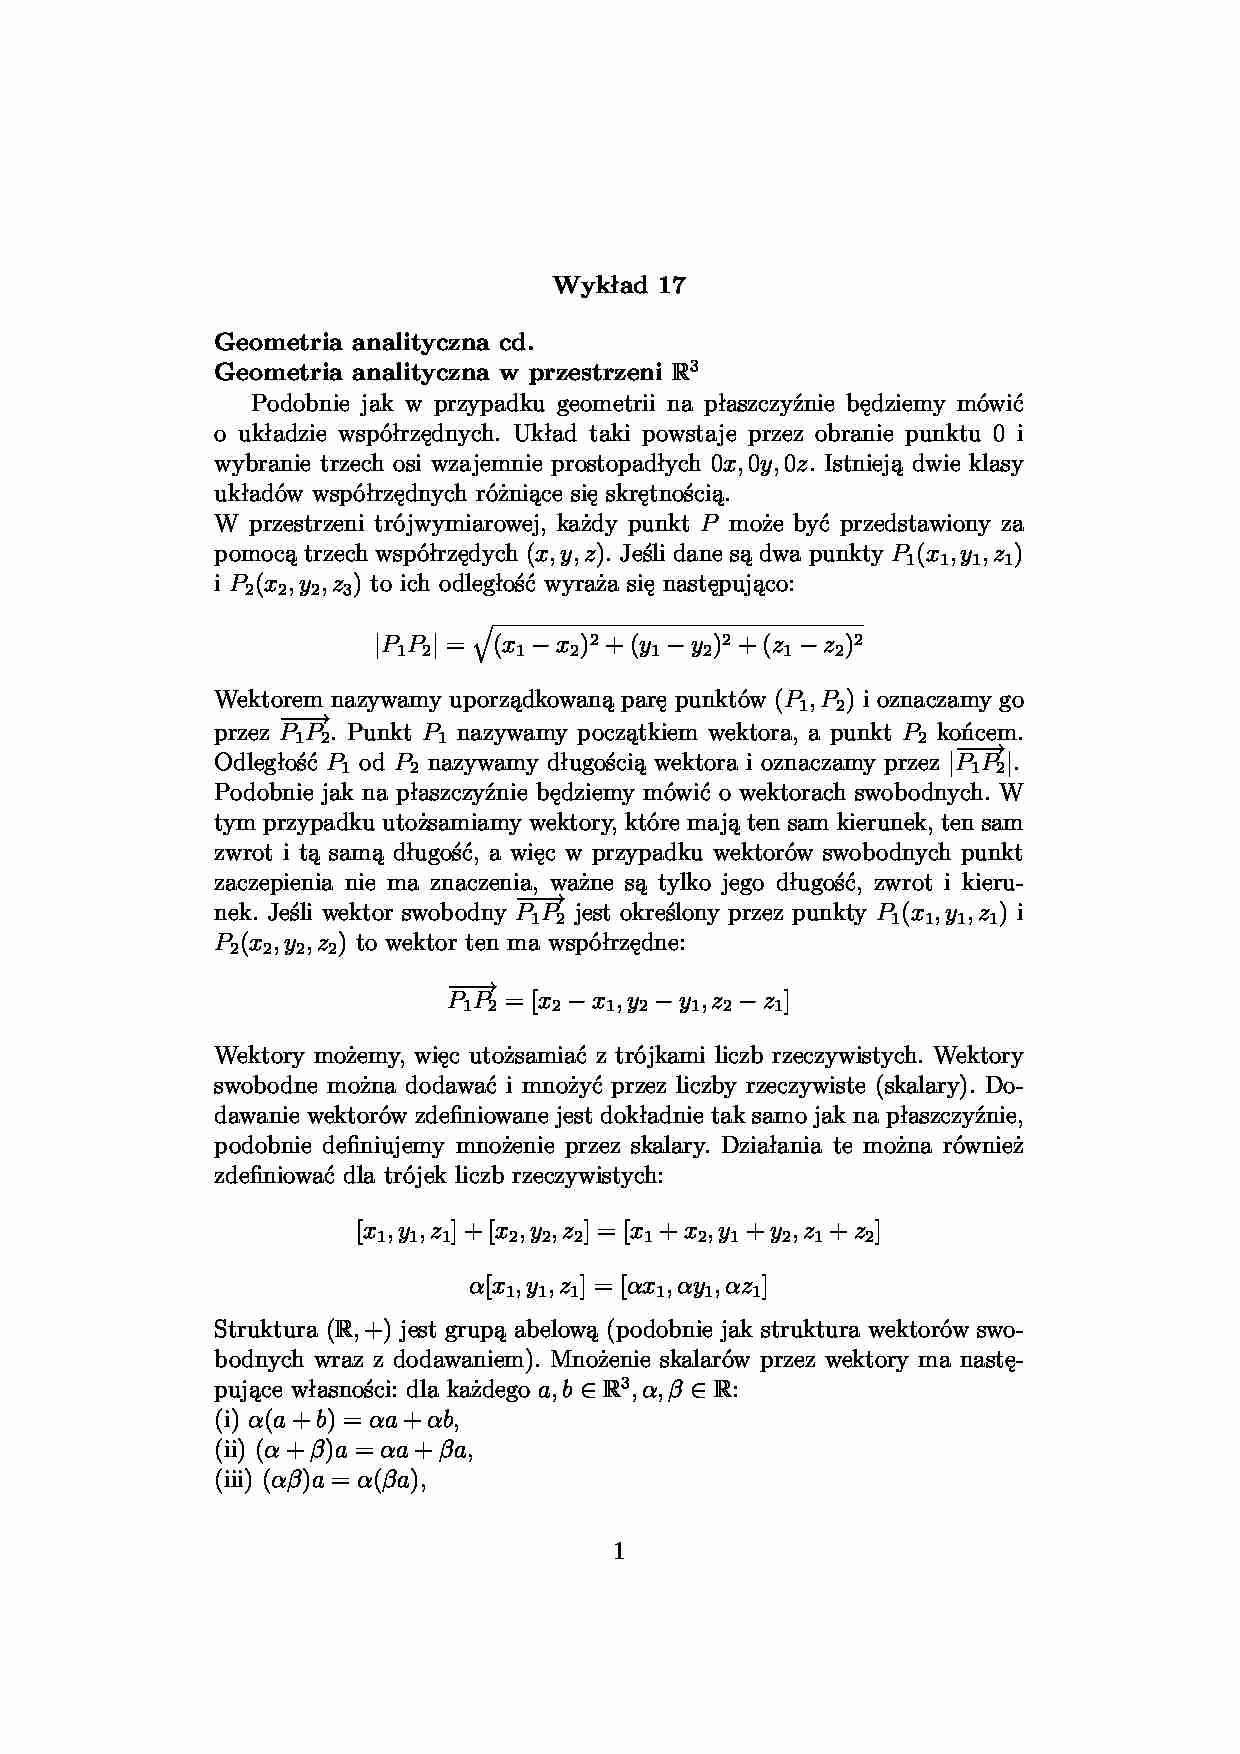 geometria analityczna -  Wykład 17 - strona 1